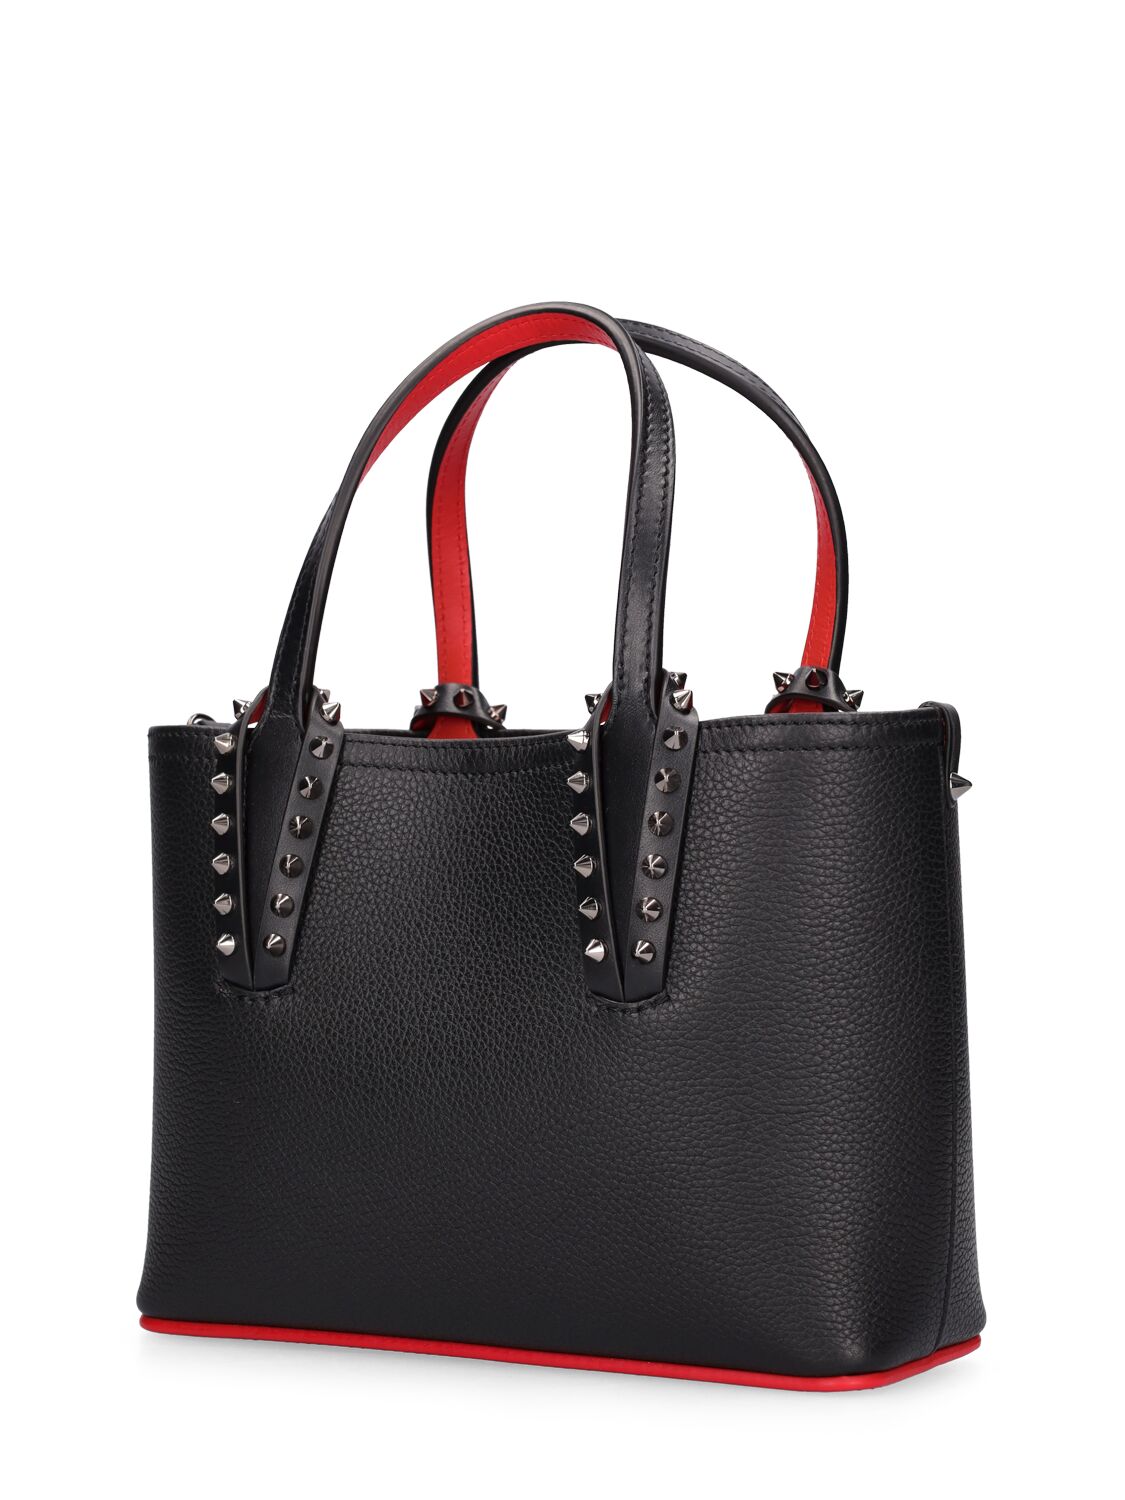 Cabata E/W mini - Tote bag - Calf leather - Black - Christian